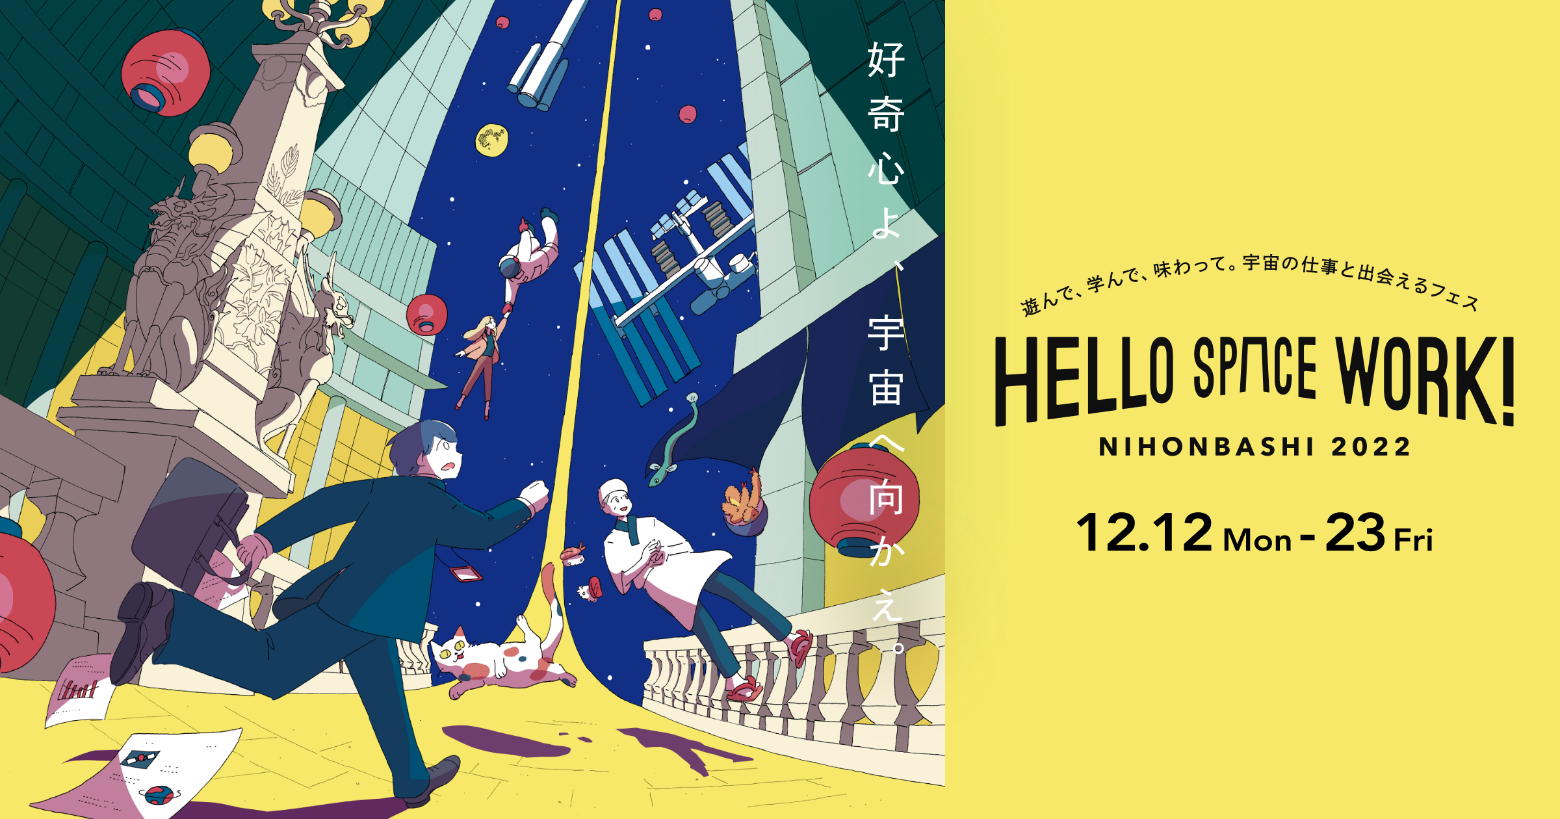 「HELLO SPACE WORK！NIHONBASHI 2022」への参加のお知らせ